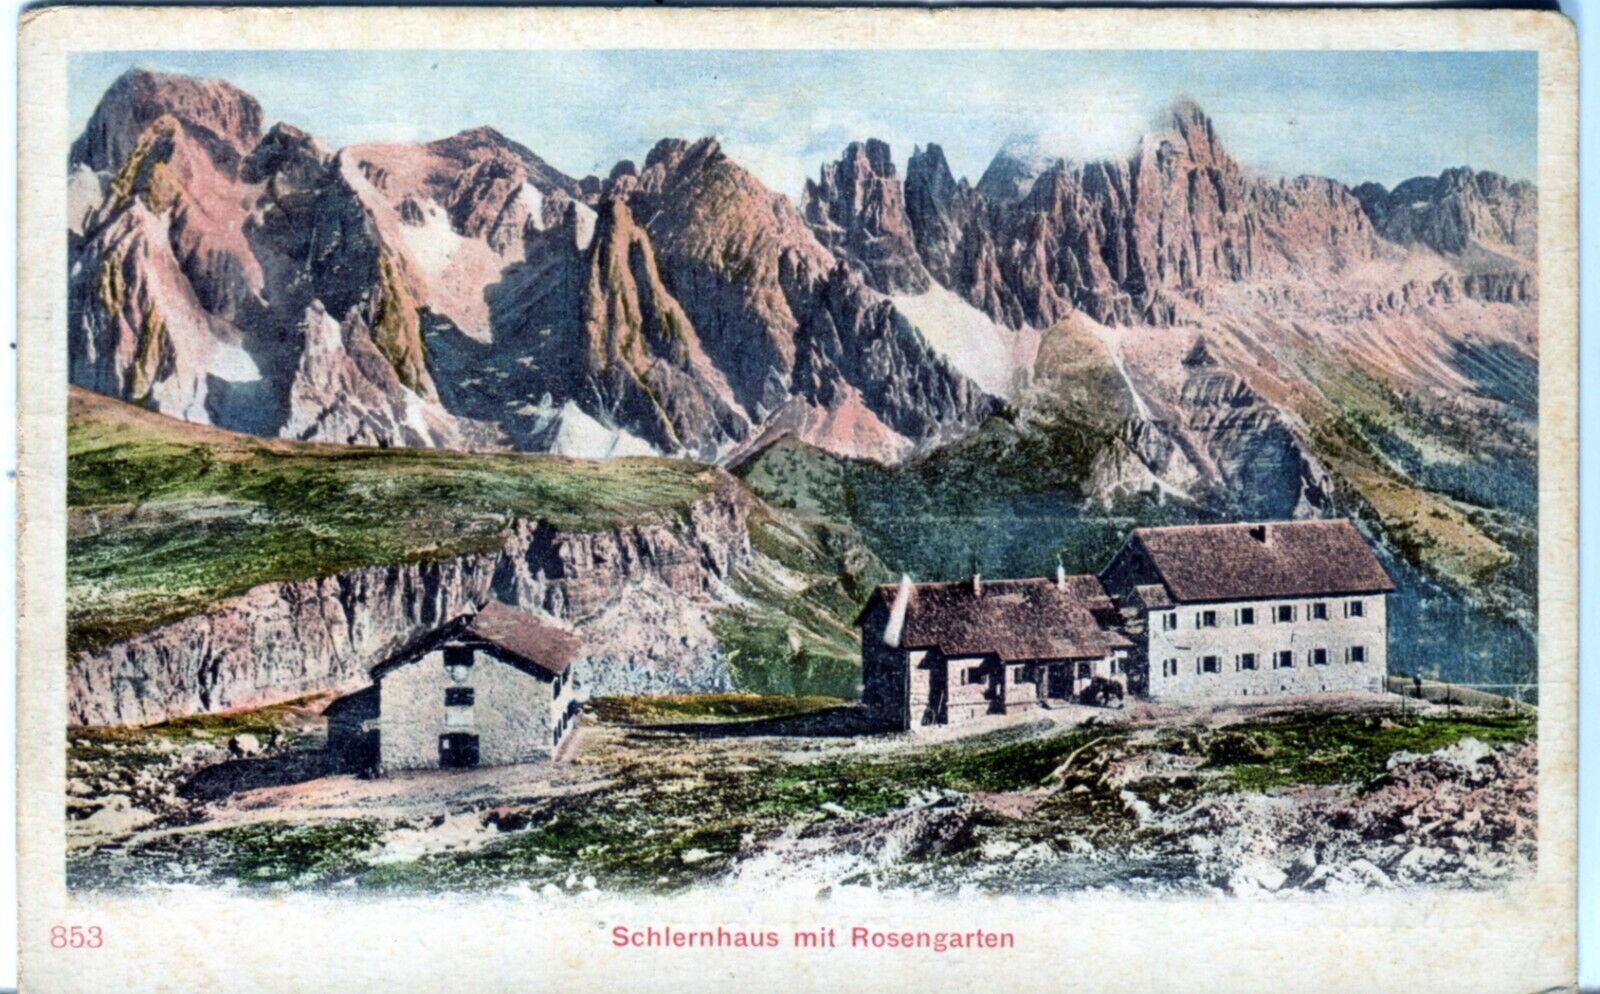 Italy Fiè allo Sciliar Schlernhaus Rifugio Bolzano - Austria published postcard